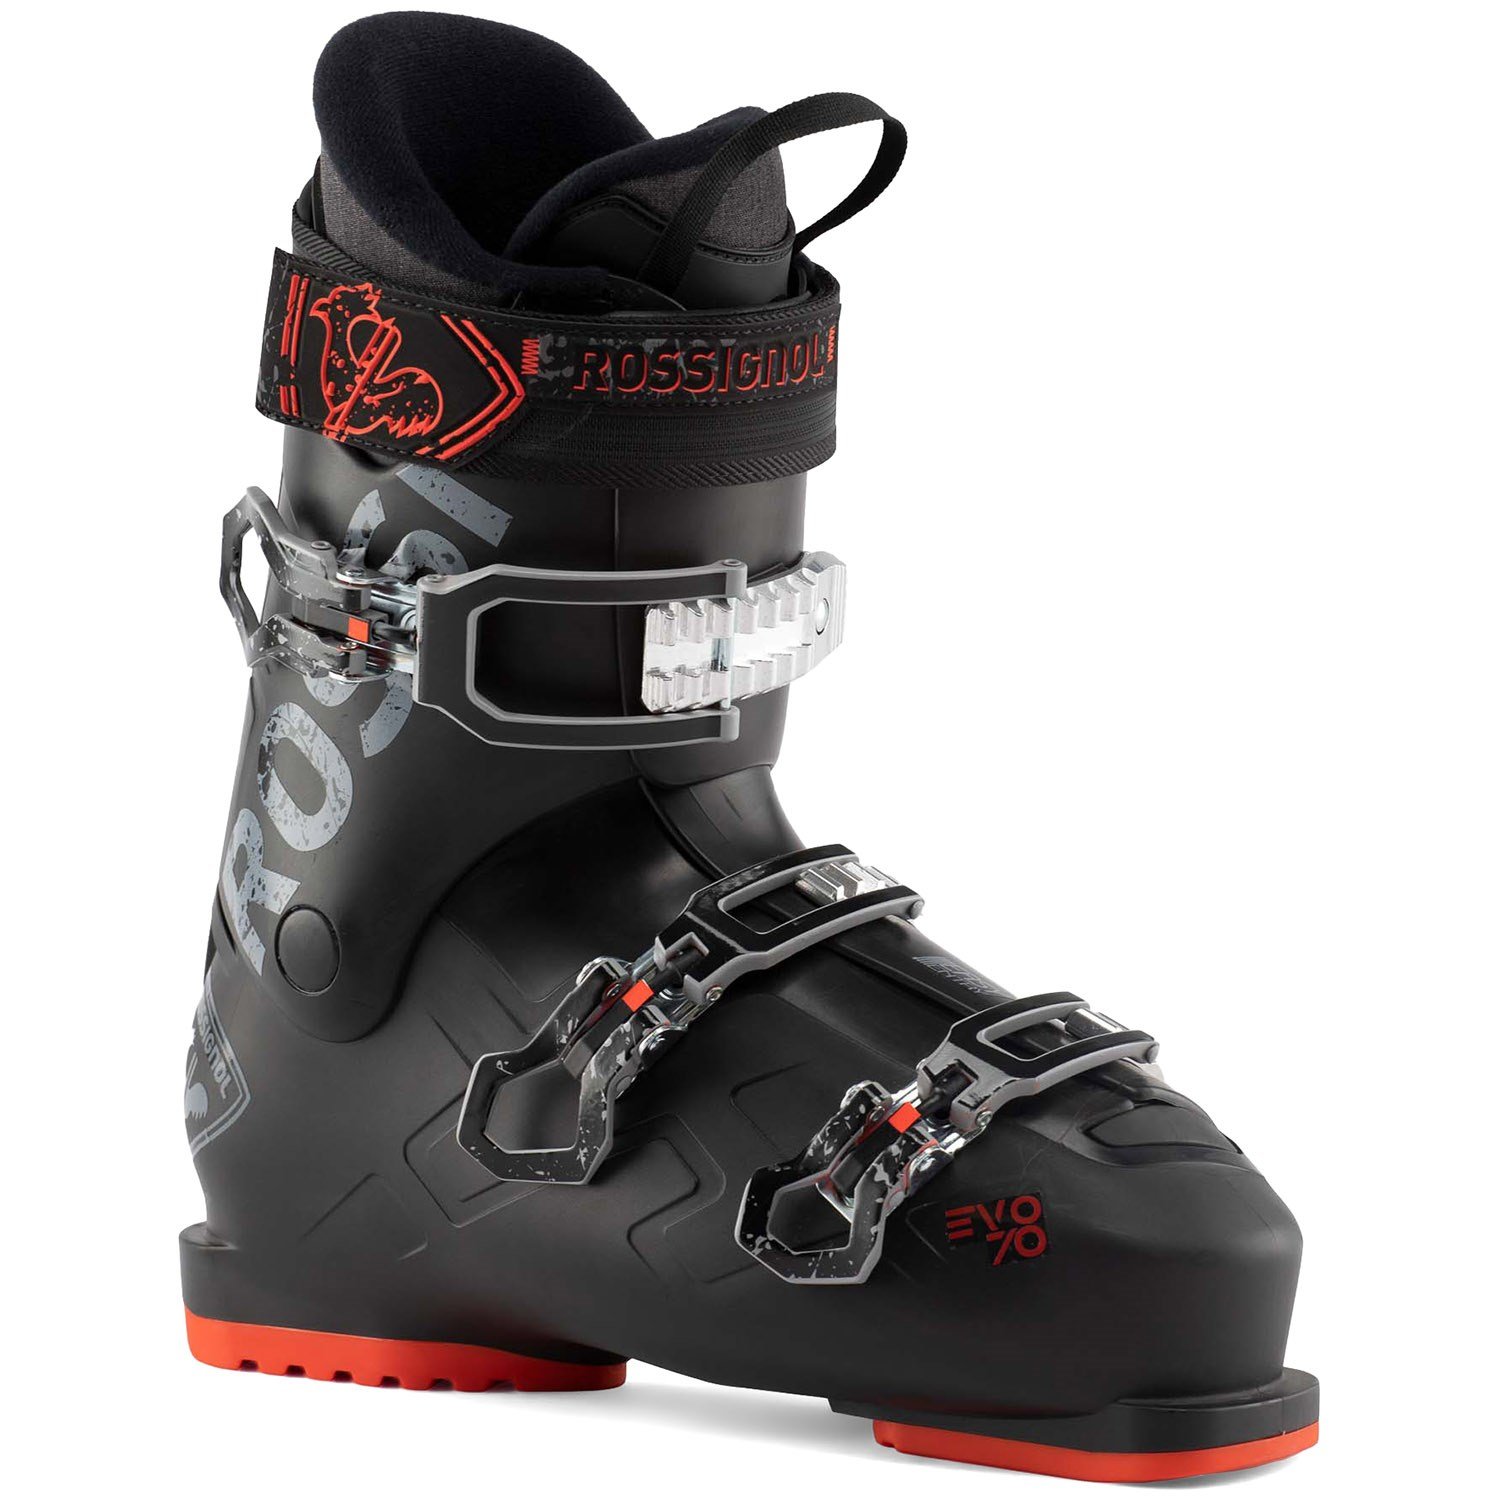 Rossignol 70 Ski Boots | evo